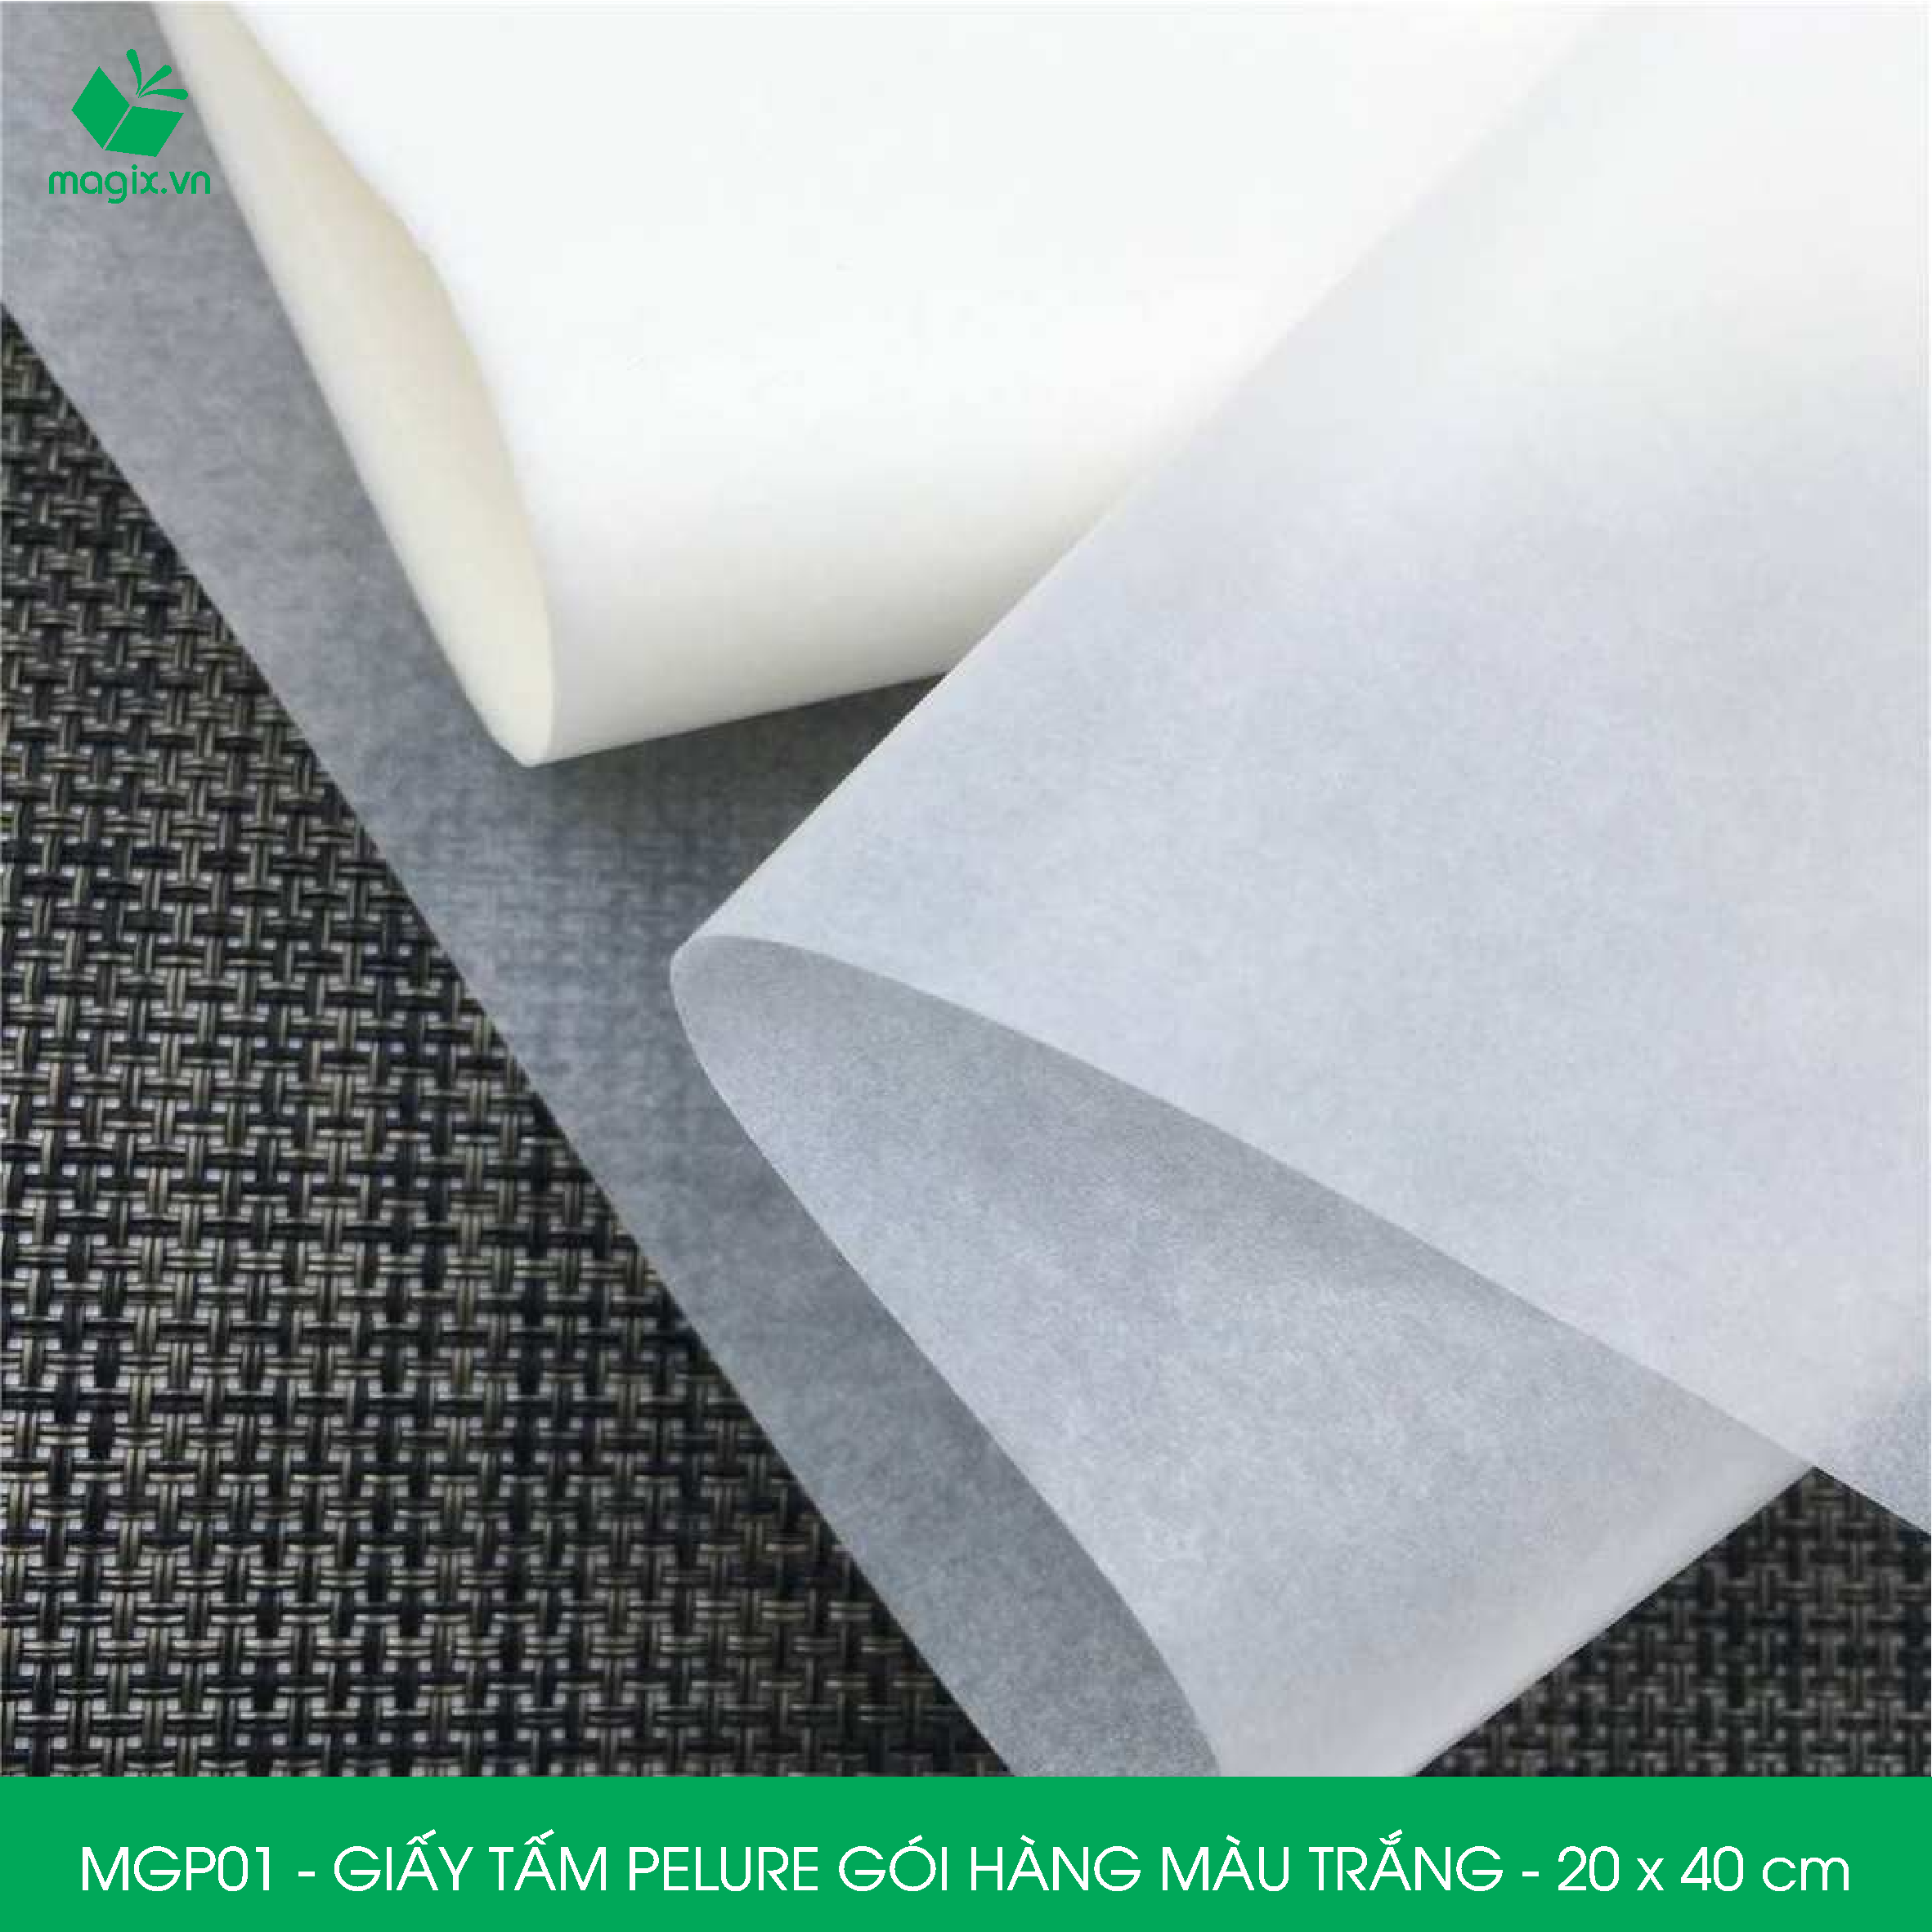 MGP01 - 20x40 cm - 100 tấm giấy Pelure trắng gói hàng, giấy chống ẩm 2 mặt mịn, giấy bọc hàng thời trang